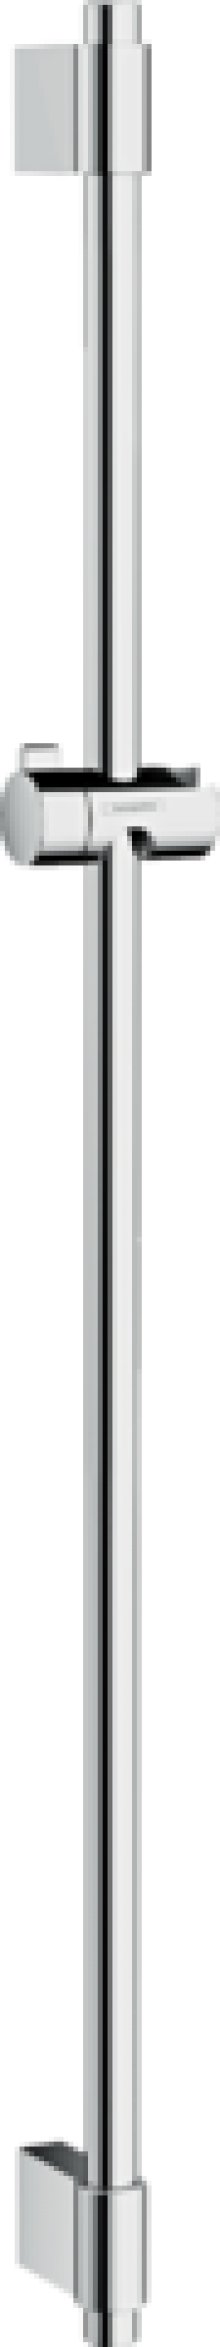 Unica sprchová tyč Varia 105 cm